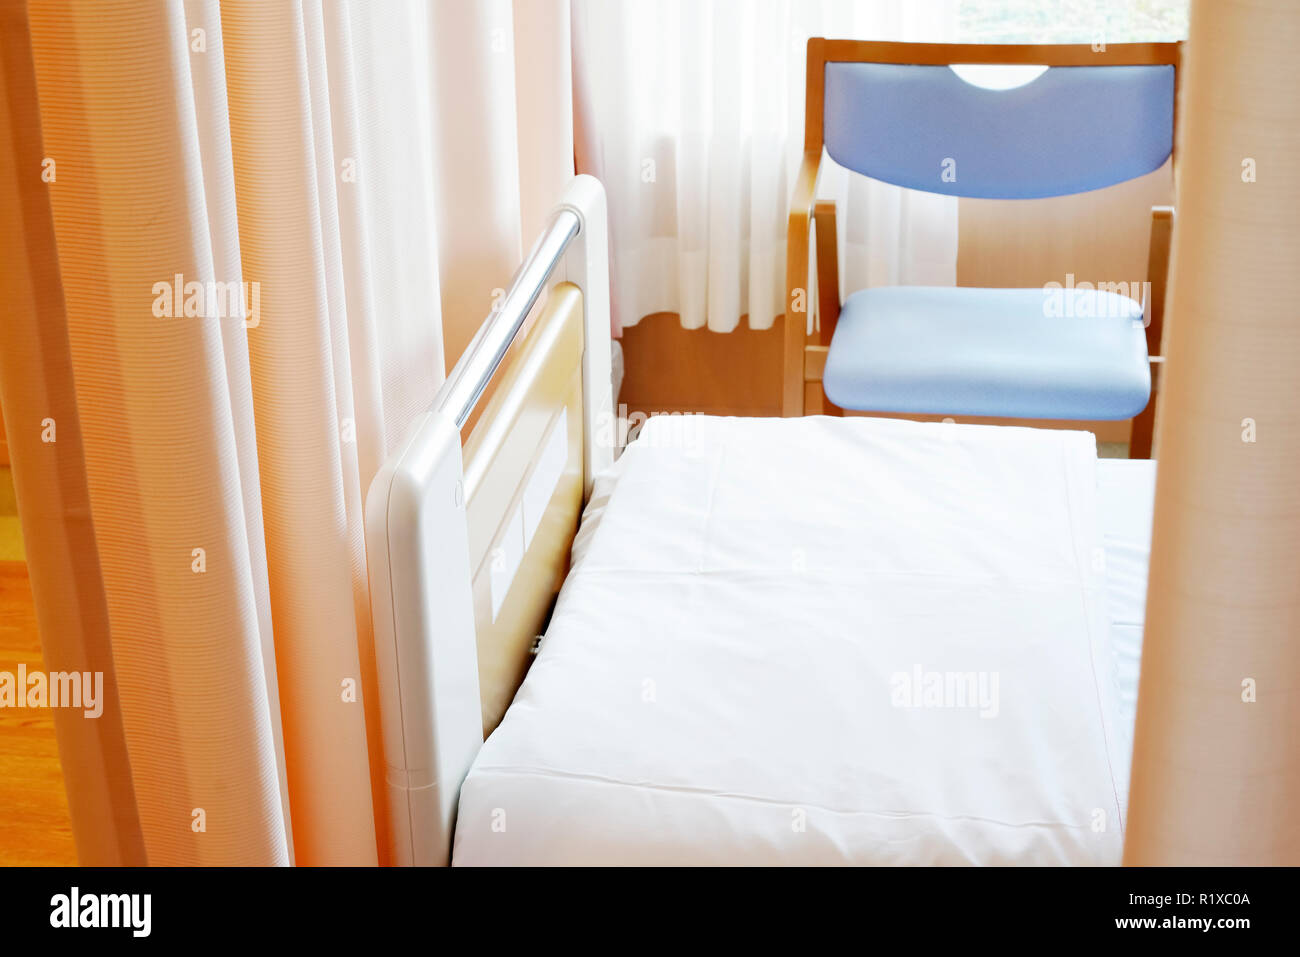 Medizinische Vorhang hängen von einem Geländer in einem Krankenhaus, Vorhang Stockfoto